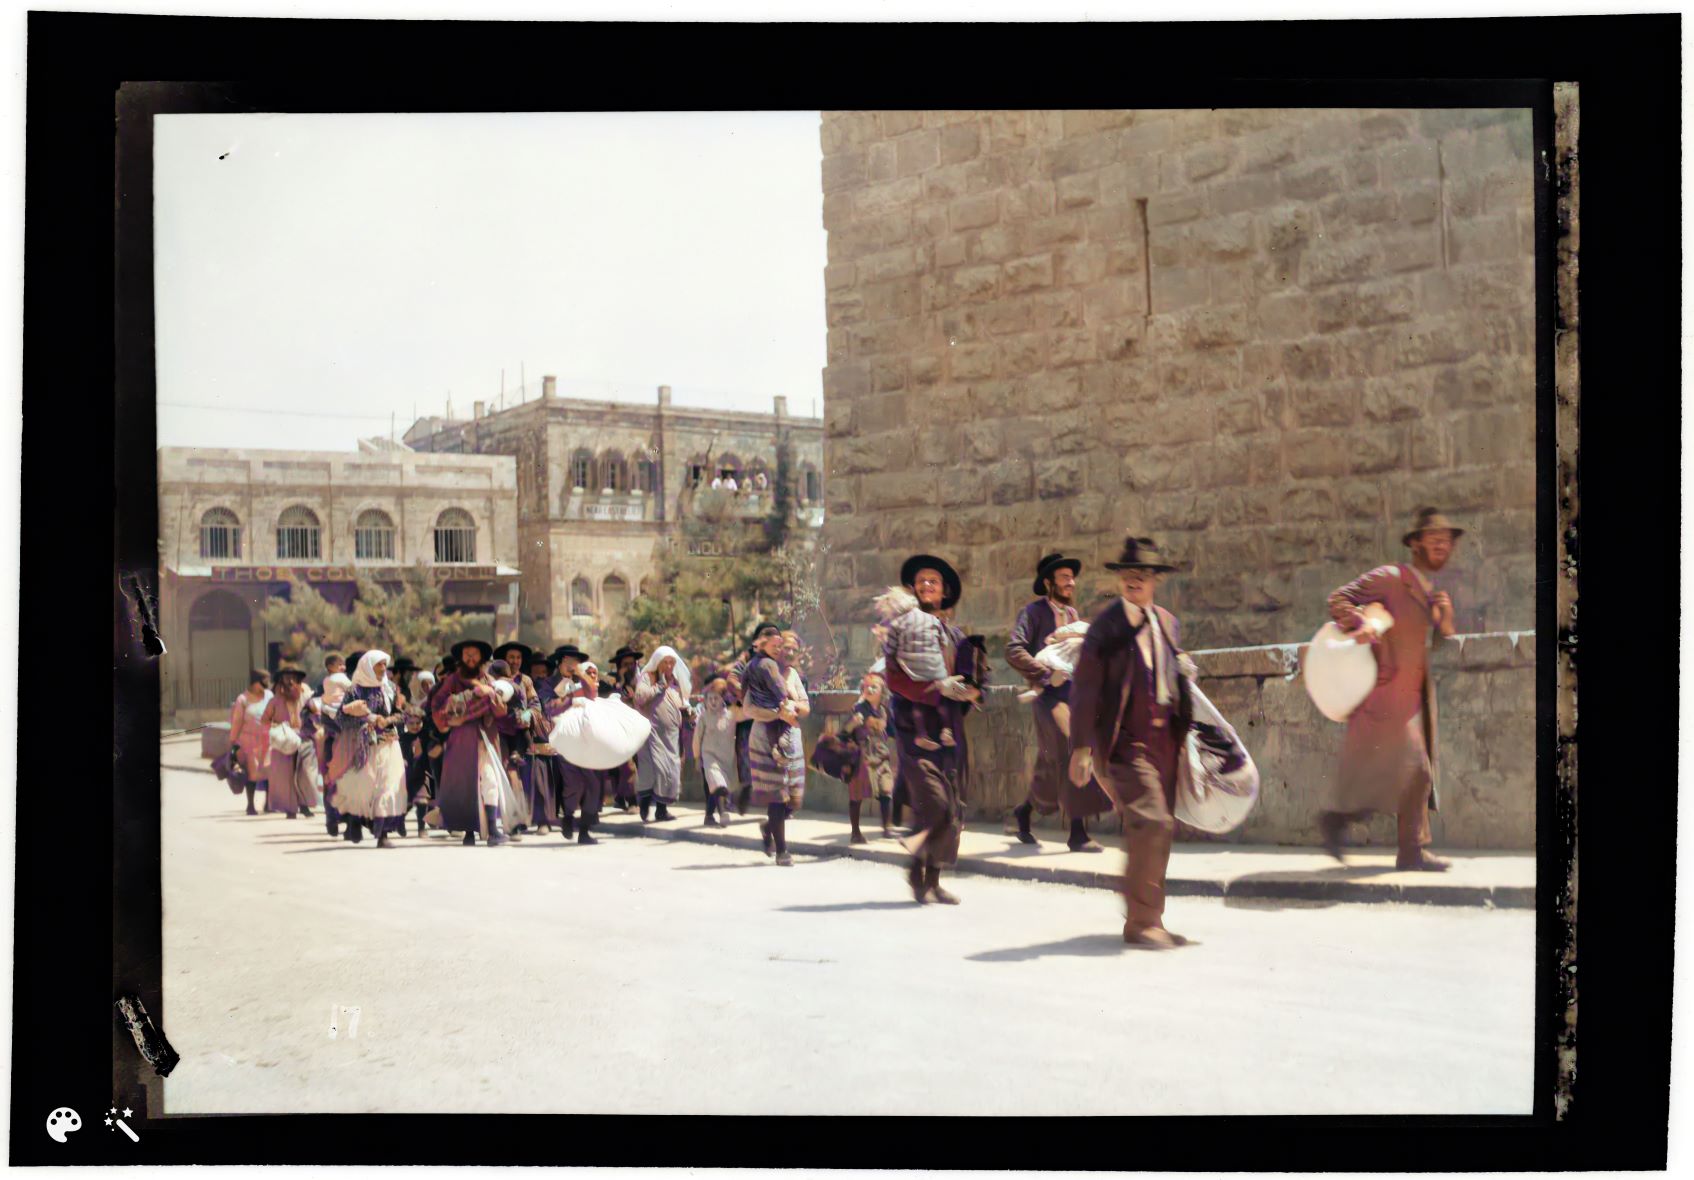 מאורעות תרפ"ט (1929). משפחות יהודיות יוצאות מהעיר העתיקה דרך שער יפו, על מטלטליהן. מספר תמונה: LC-DIG-matpc-15716